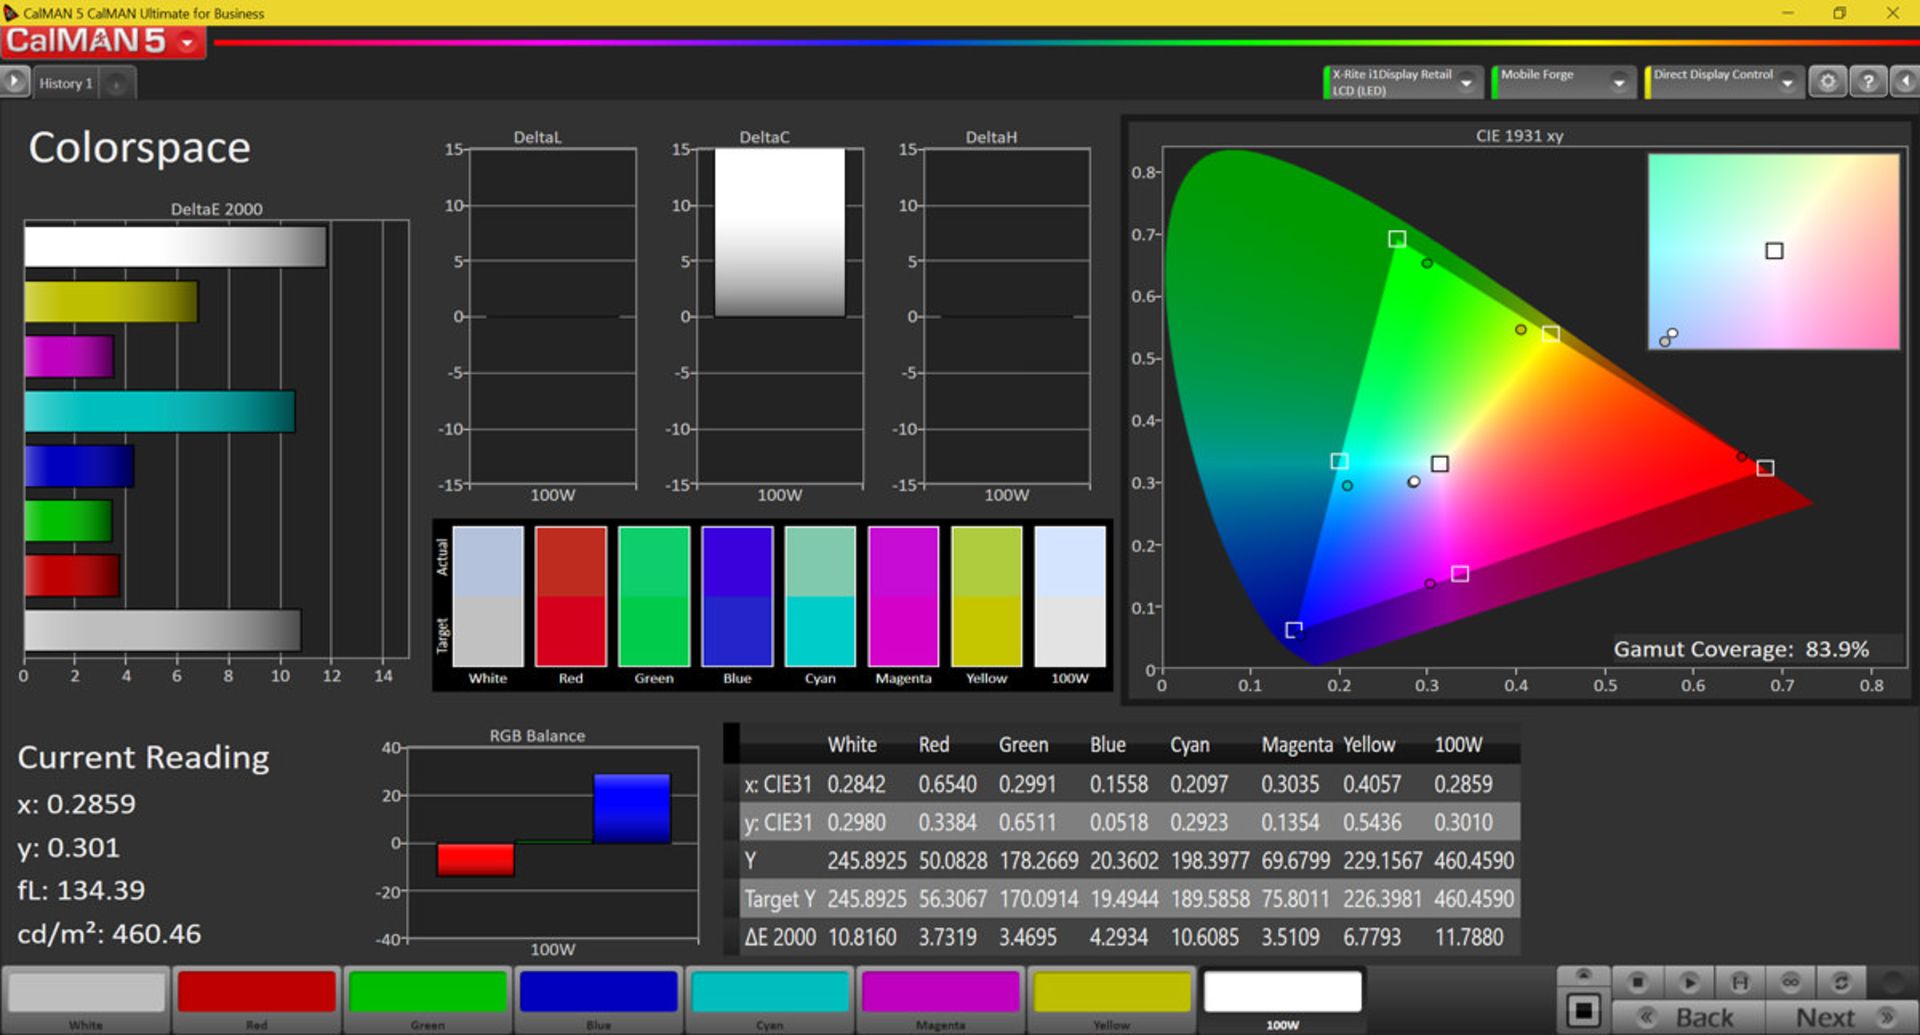 دقت رنگی در فضای sRGB در حالت Normal- وای ۹ پرایم ۲۰۱۹ هواوی